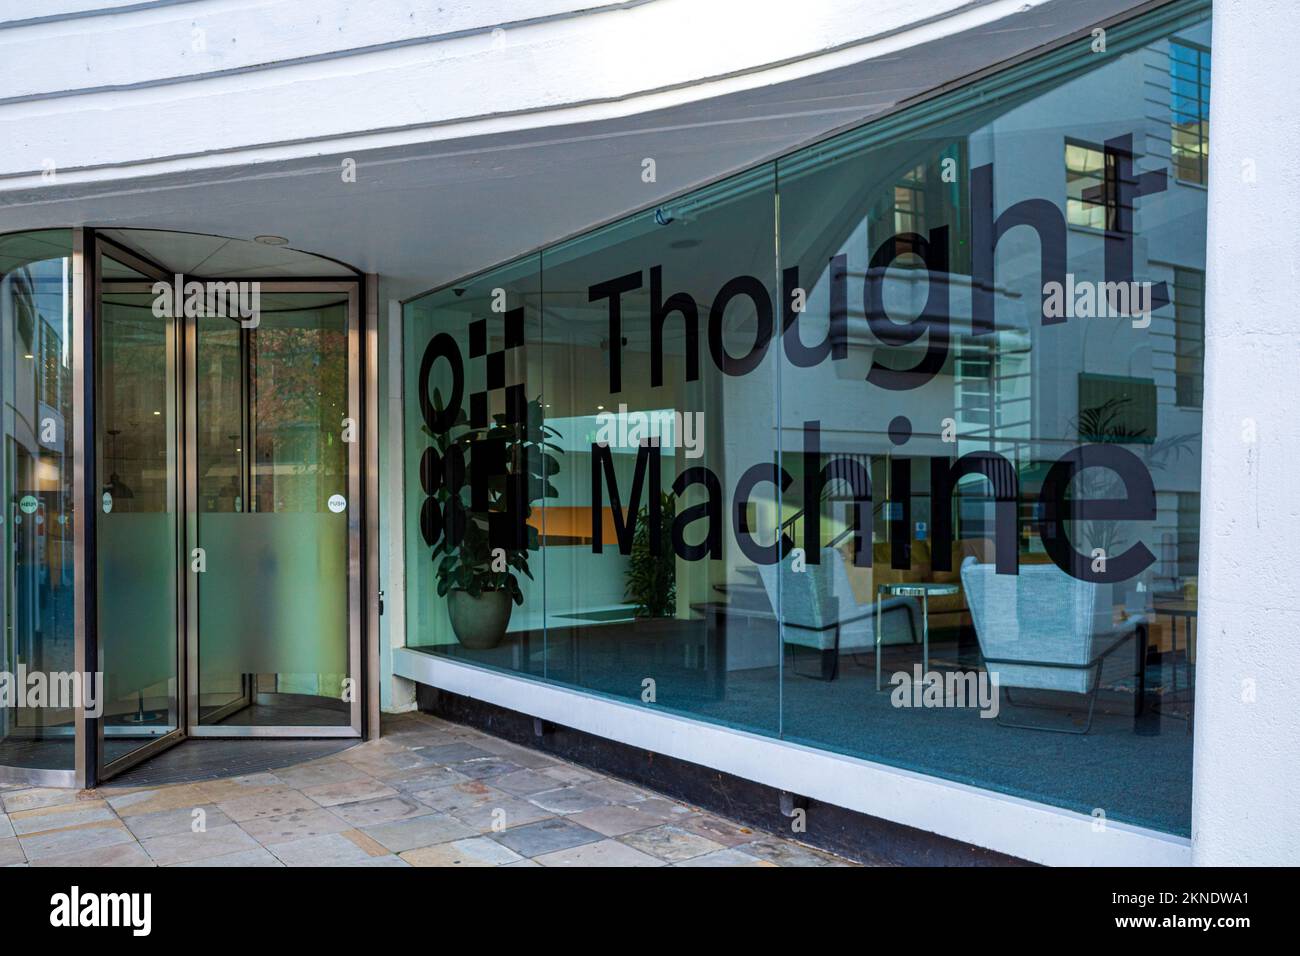 Thought machine HQ London Herbrand St - Thought machine est une société de technologie financière qui construit des plates-formes basées sur le cloud pour le secteur bancaire. Fondée 2014. Banque D'Images